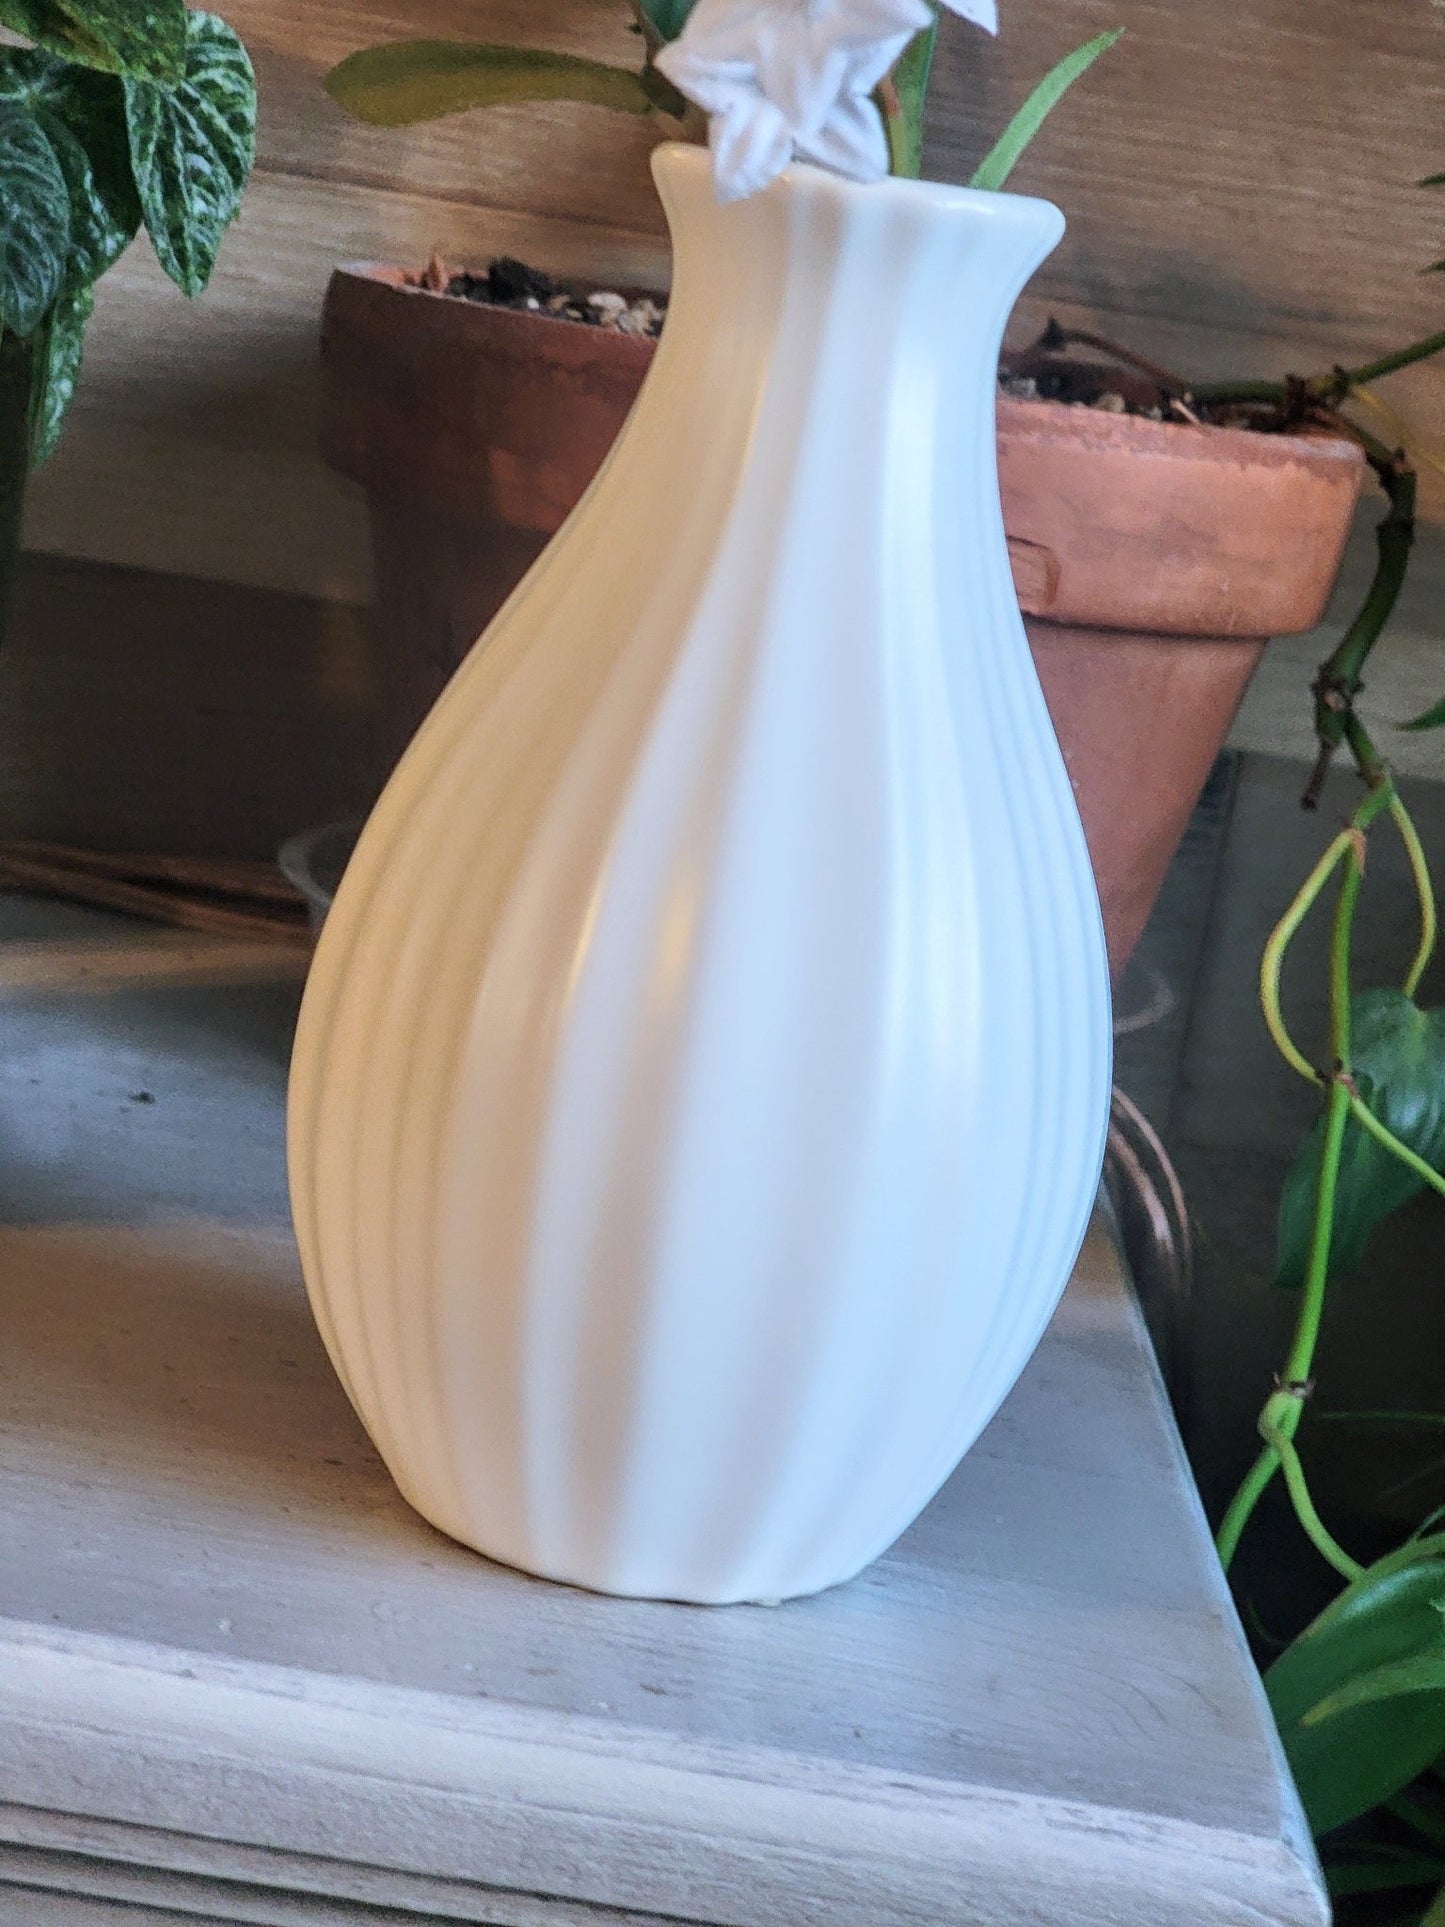 White Vase - Smash's Stashes